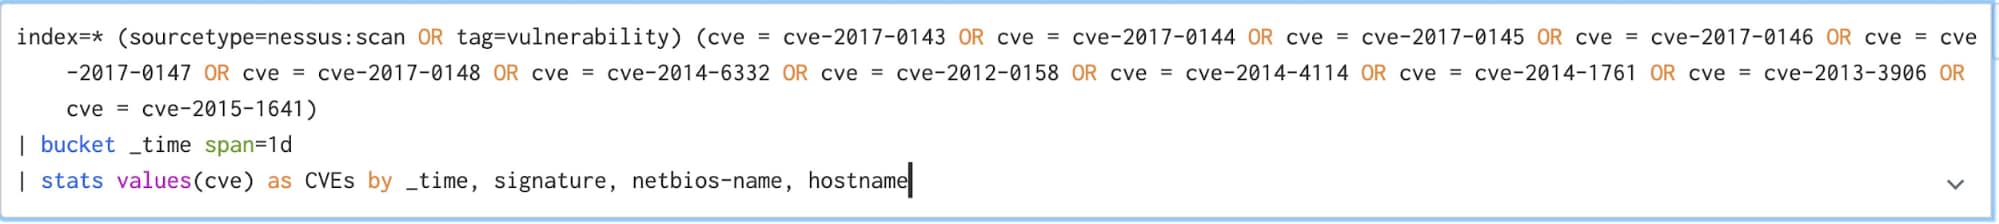 CVE Code